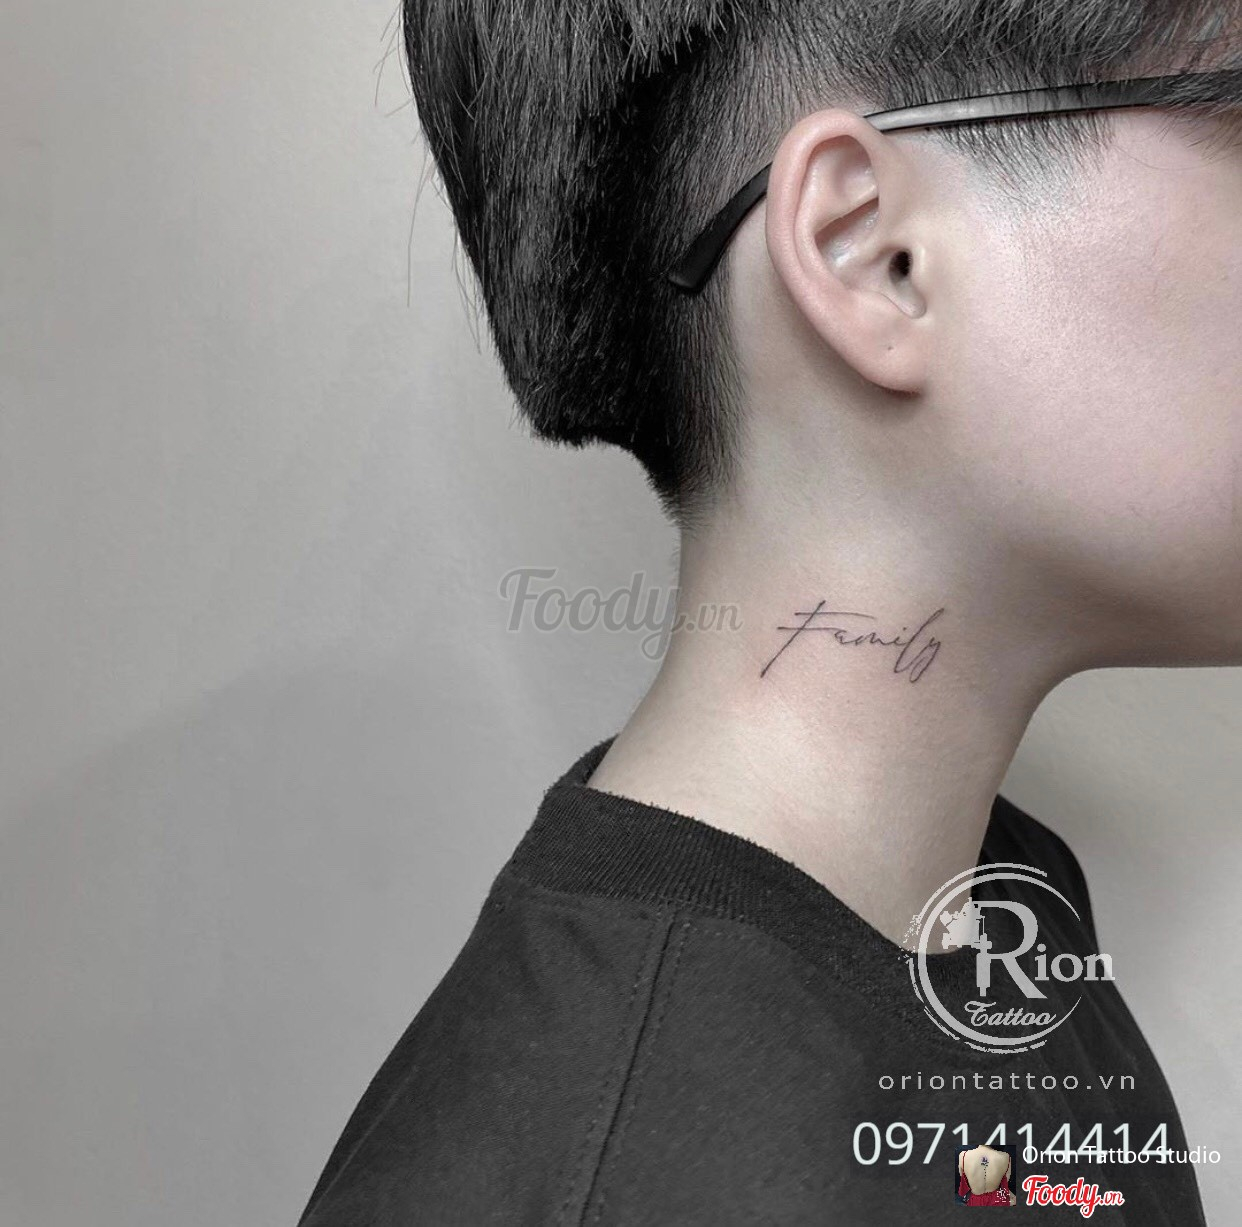 Orion Tattoo - Xăm Nghệ Thuật - Đường Láng ở Quận Đống Đa, Hà Nội ...